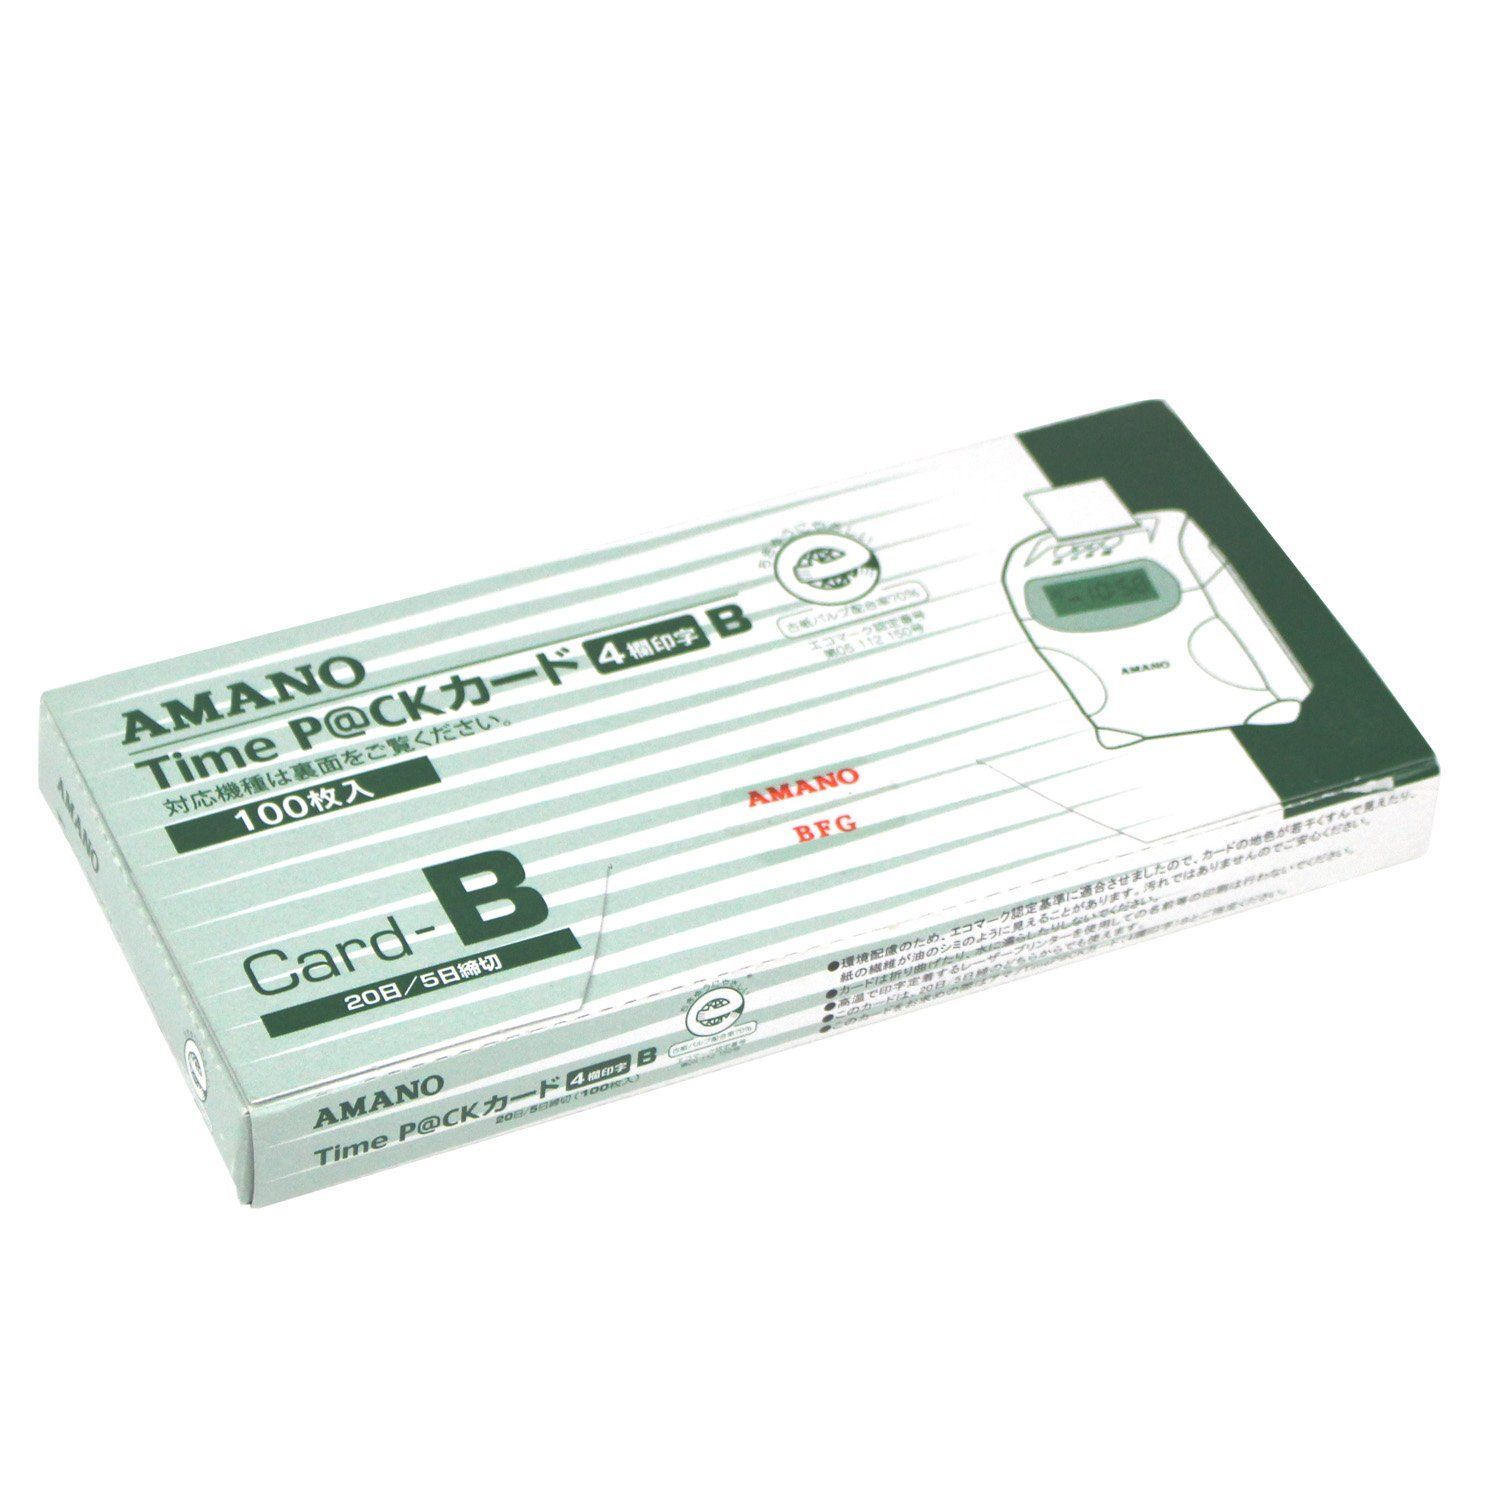 アマノ PJR専用タイムカード PJRカード 00048450まとめ買い3パックセット - 3